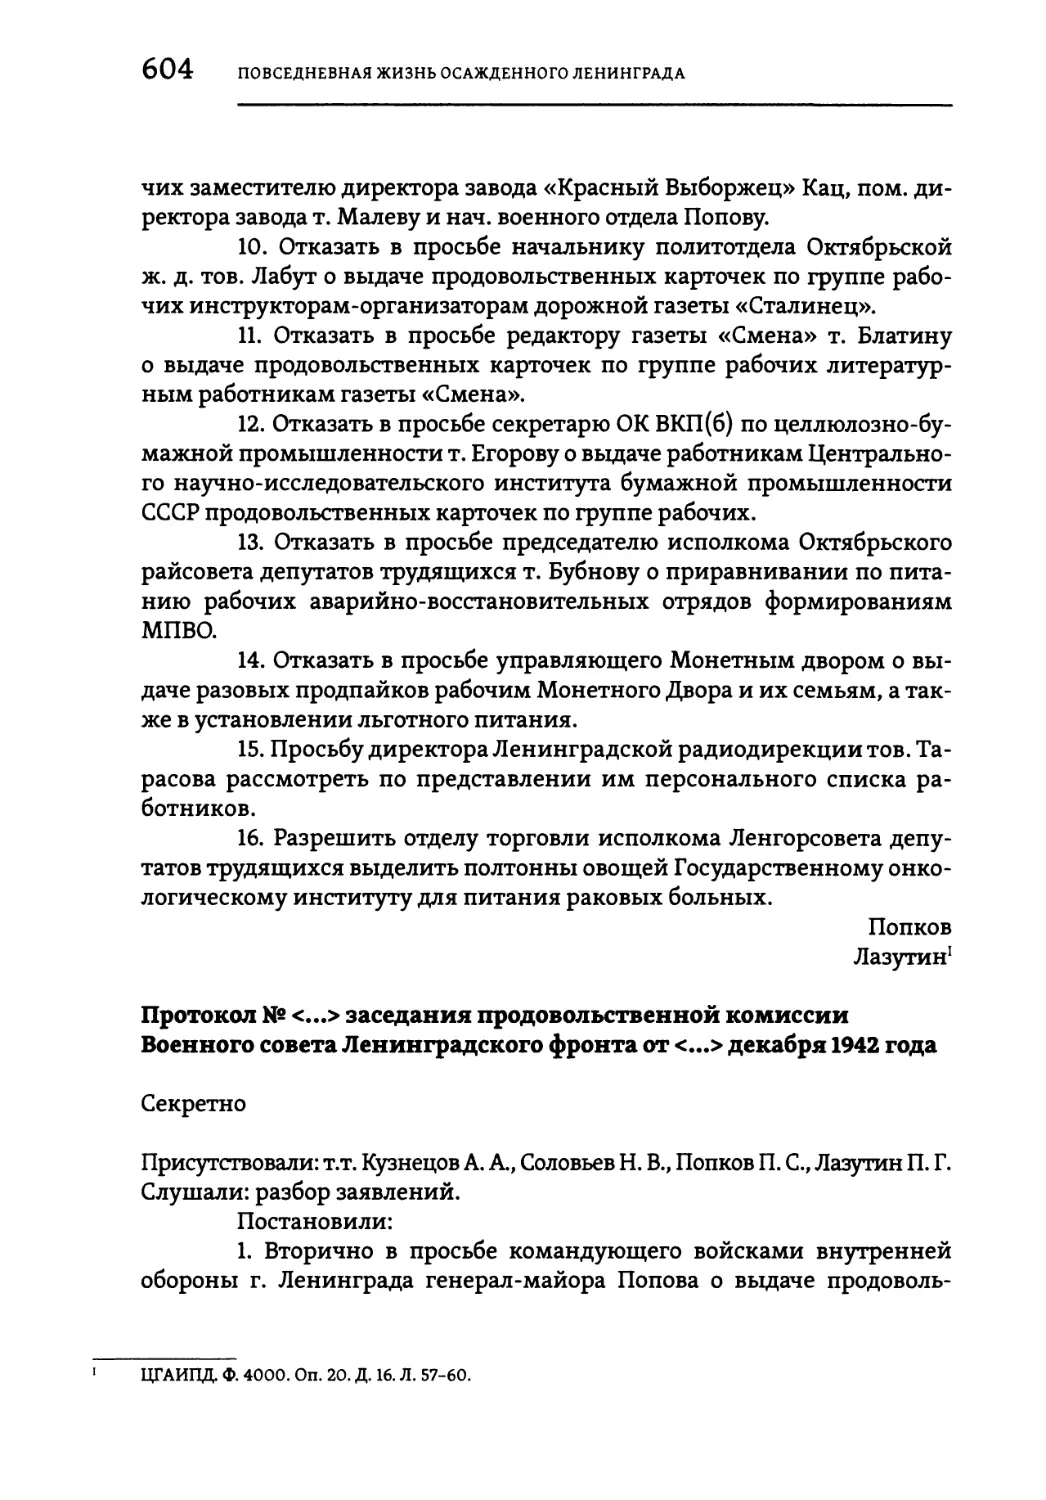 Протокол № <...> заседания продовольственной комиссии Военного совета Ленинградского фронта от <...> декабря 1942 года